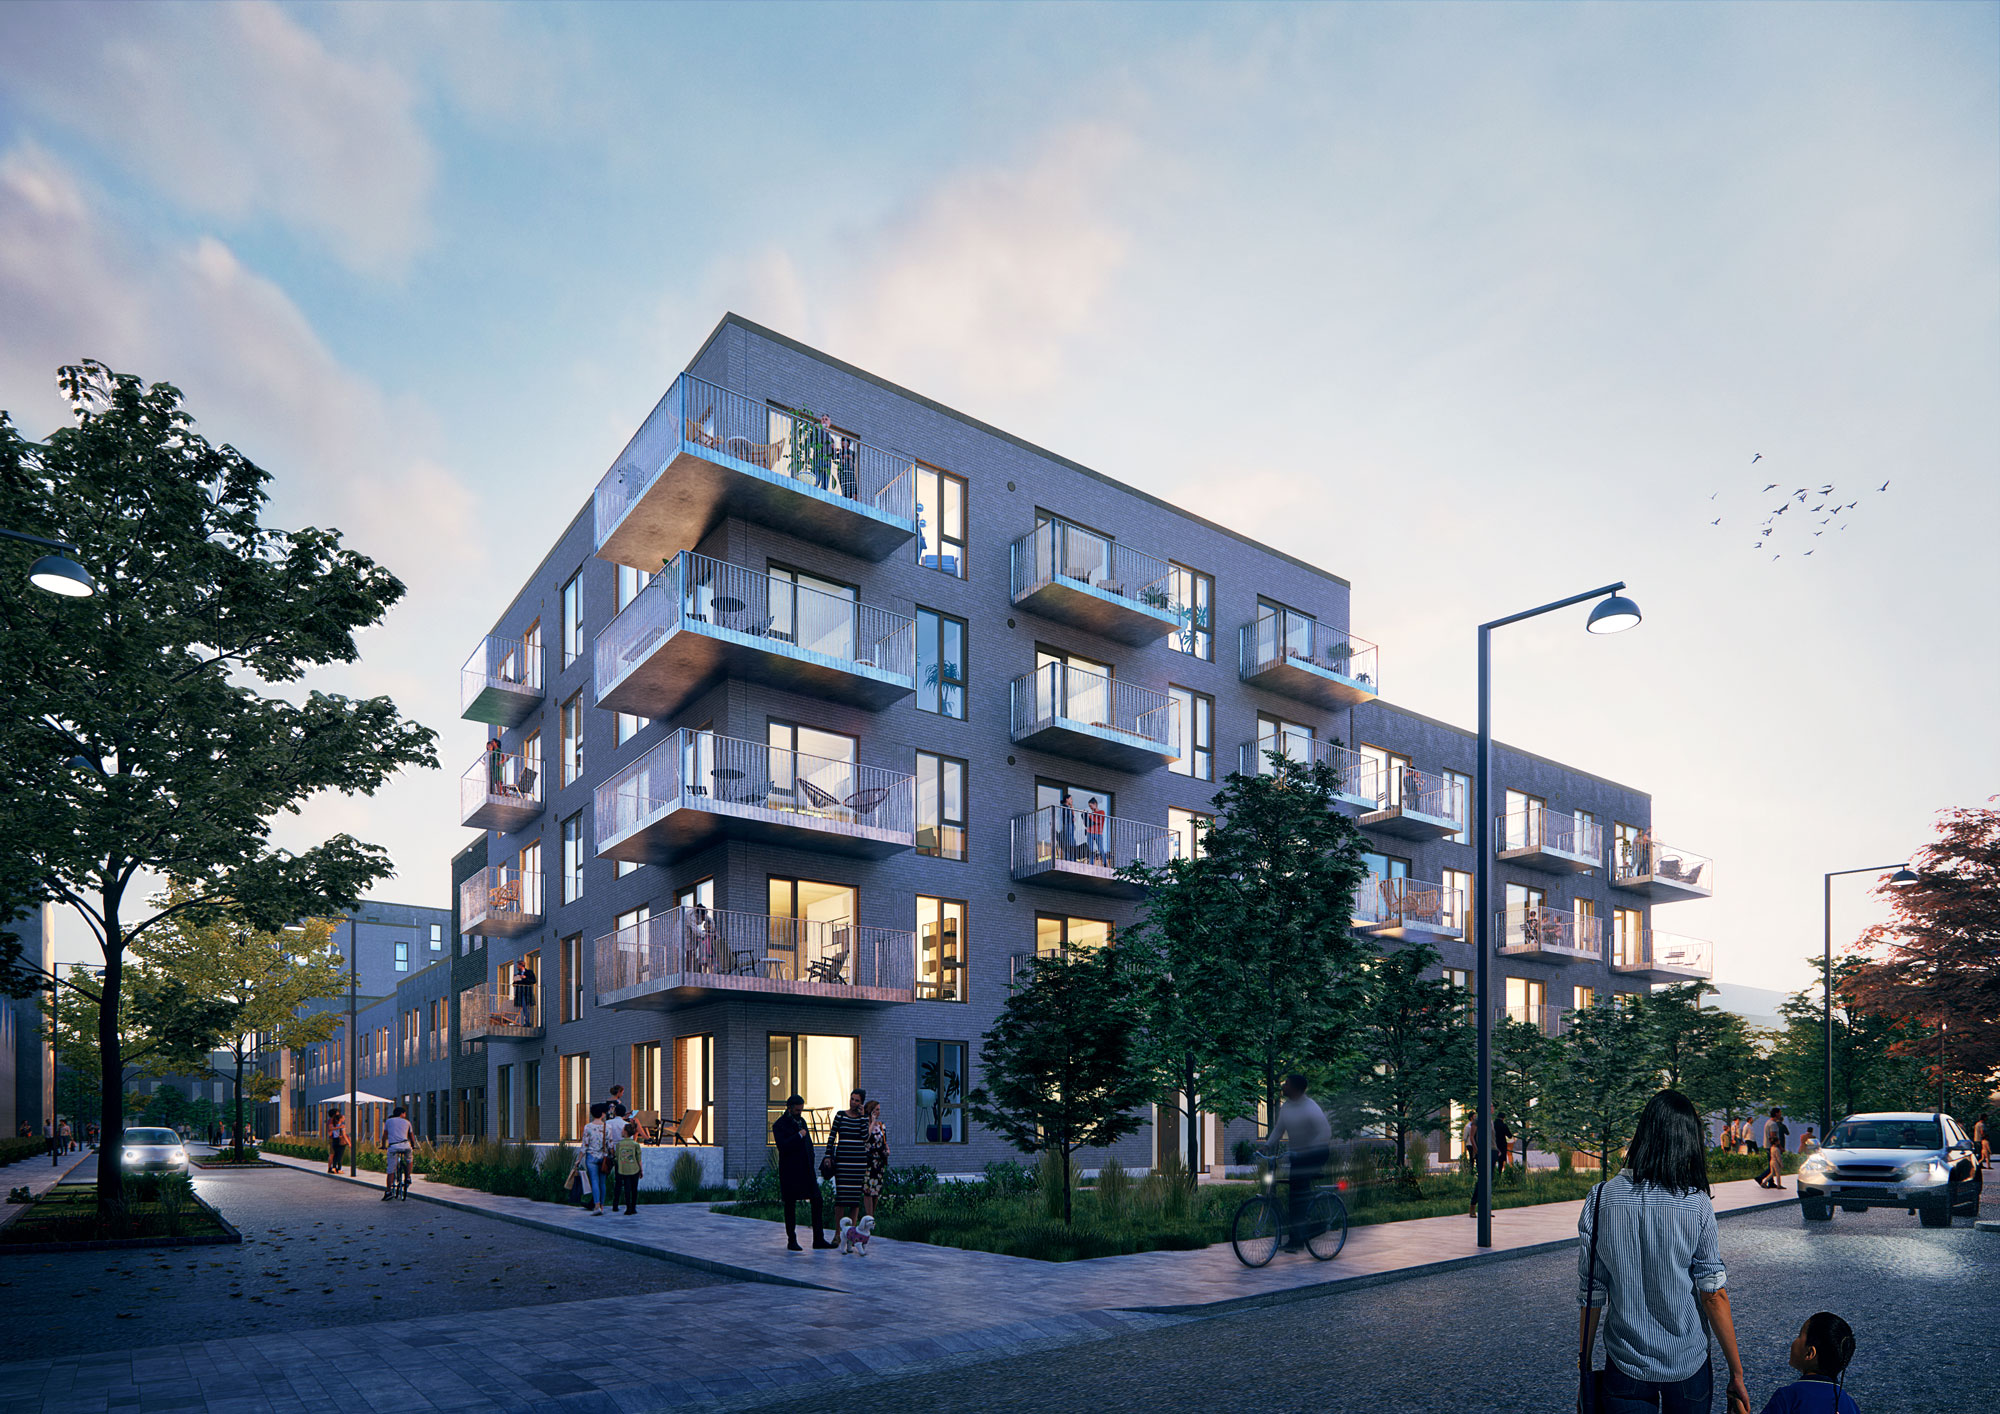 Lejligheder og rækkehuse i Ørestad